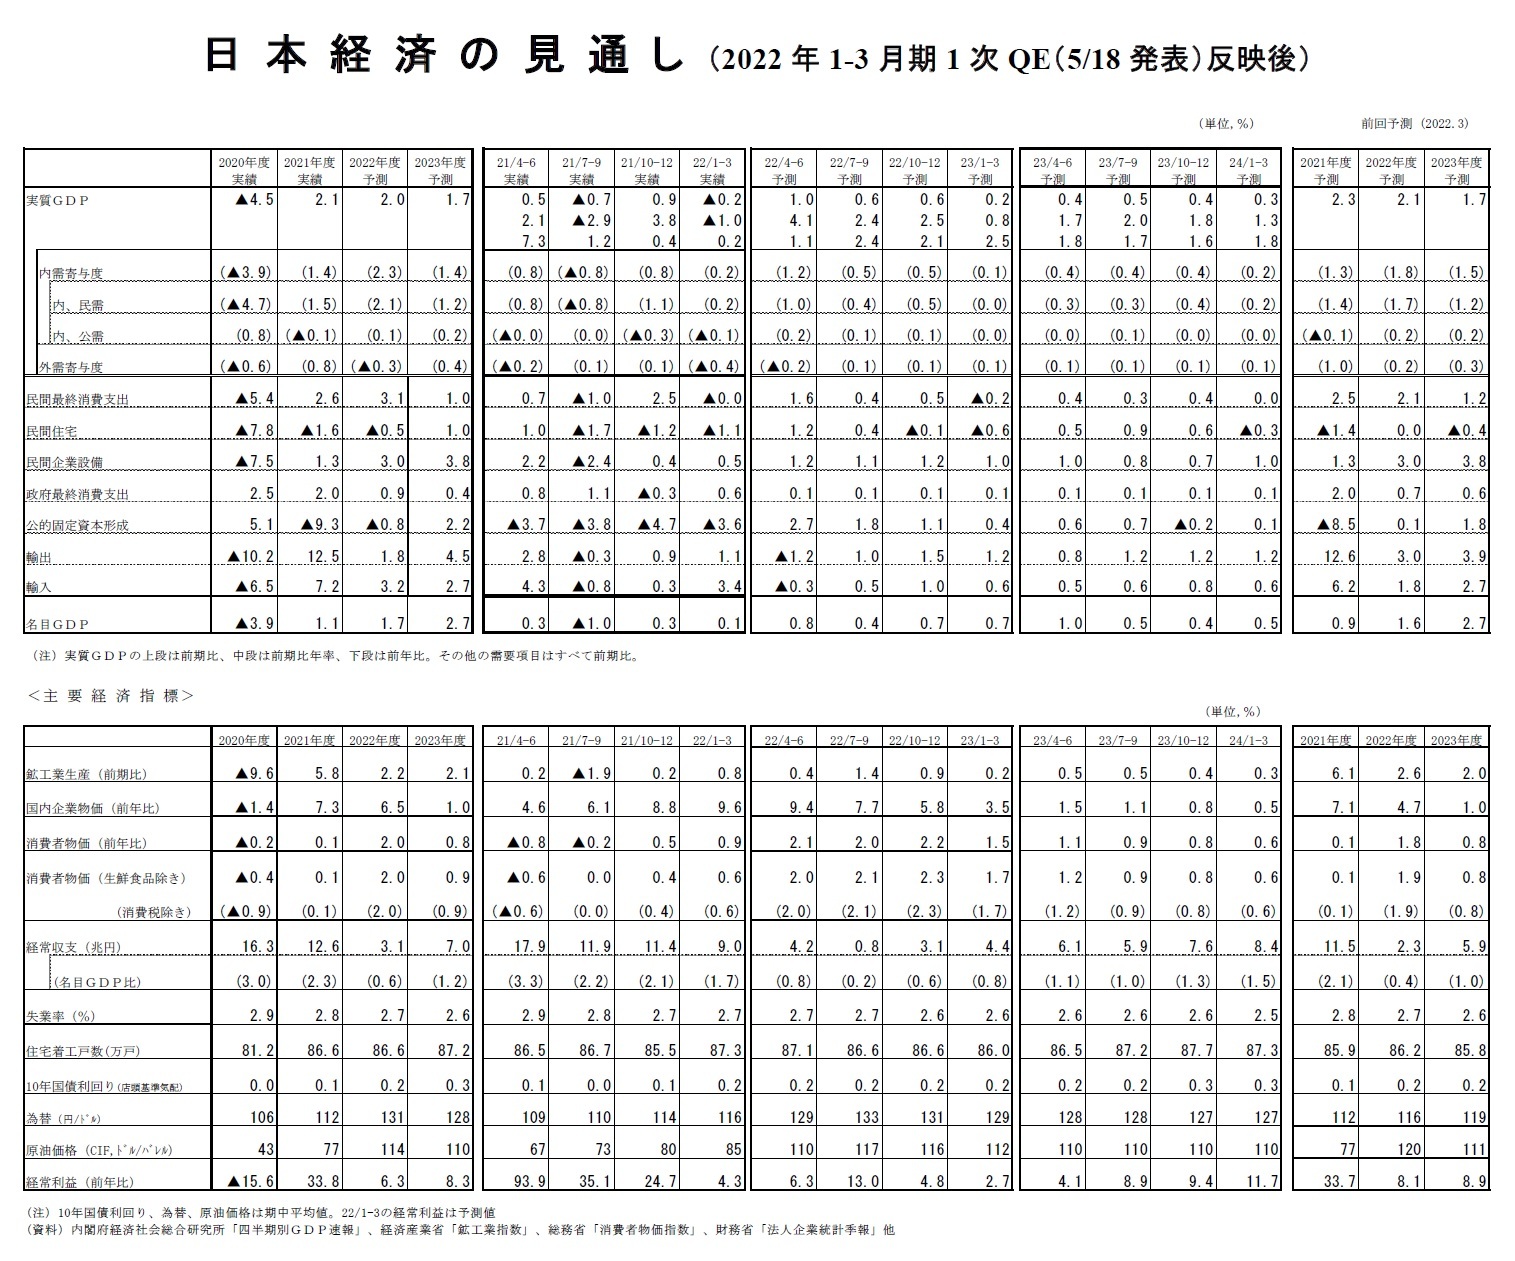 日本経済の見通し（2022年1-3月期1次QE（5/18発表）反映後）